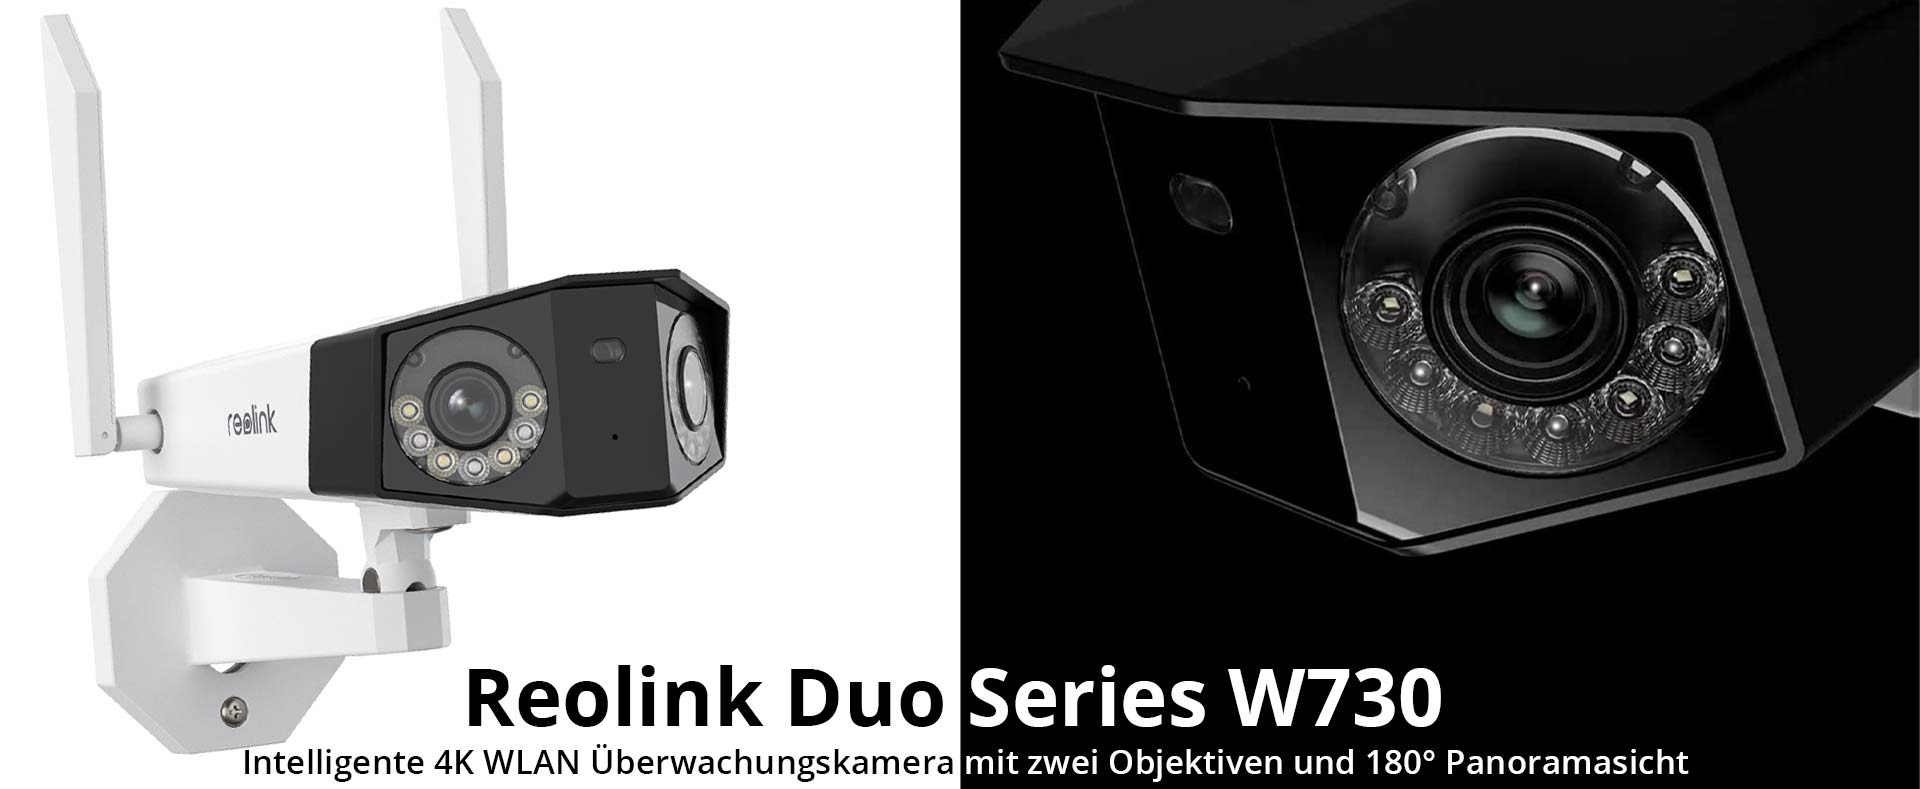 Reolink Duo Series W730 Intelligente 4K Dualband WLAN Überwachungskamera mit zwei Objektiven und 180° Panoramasicht